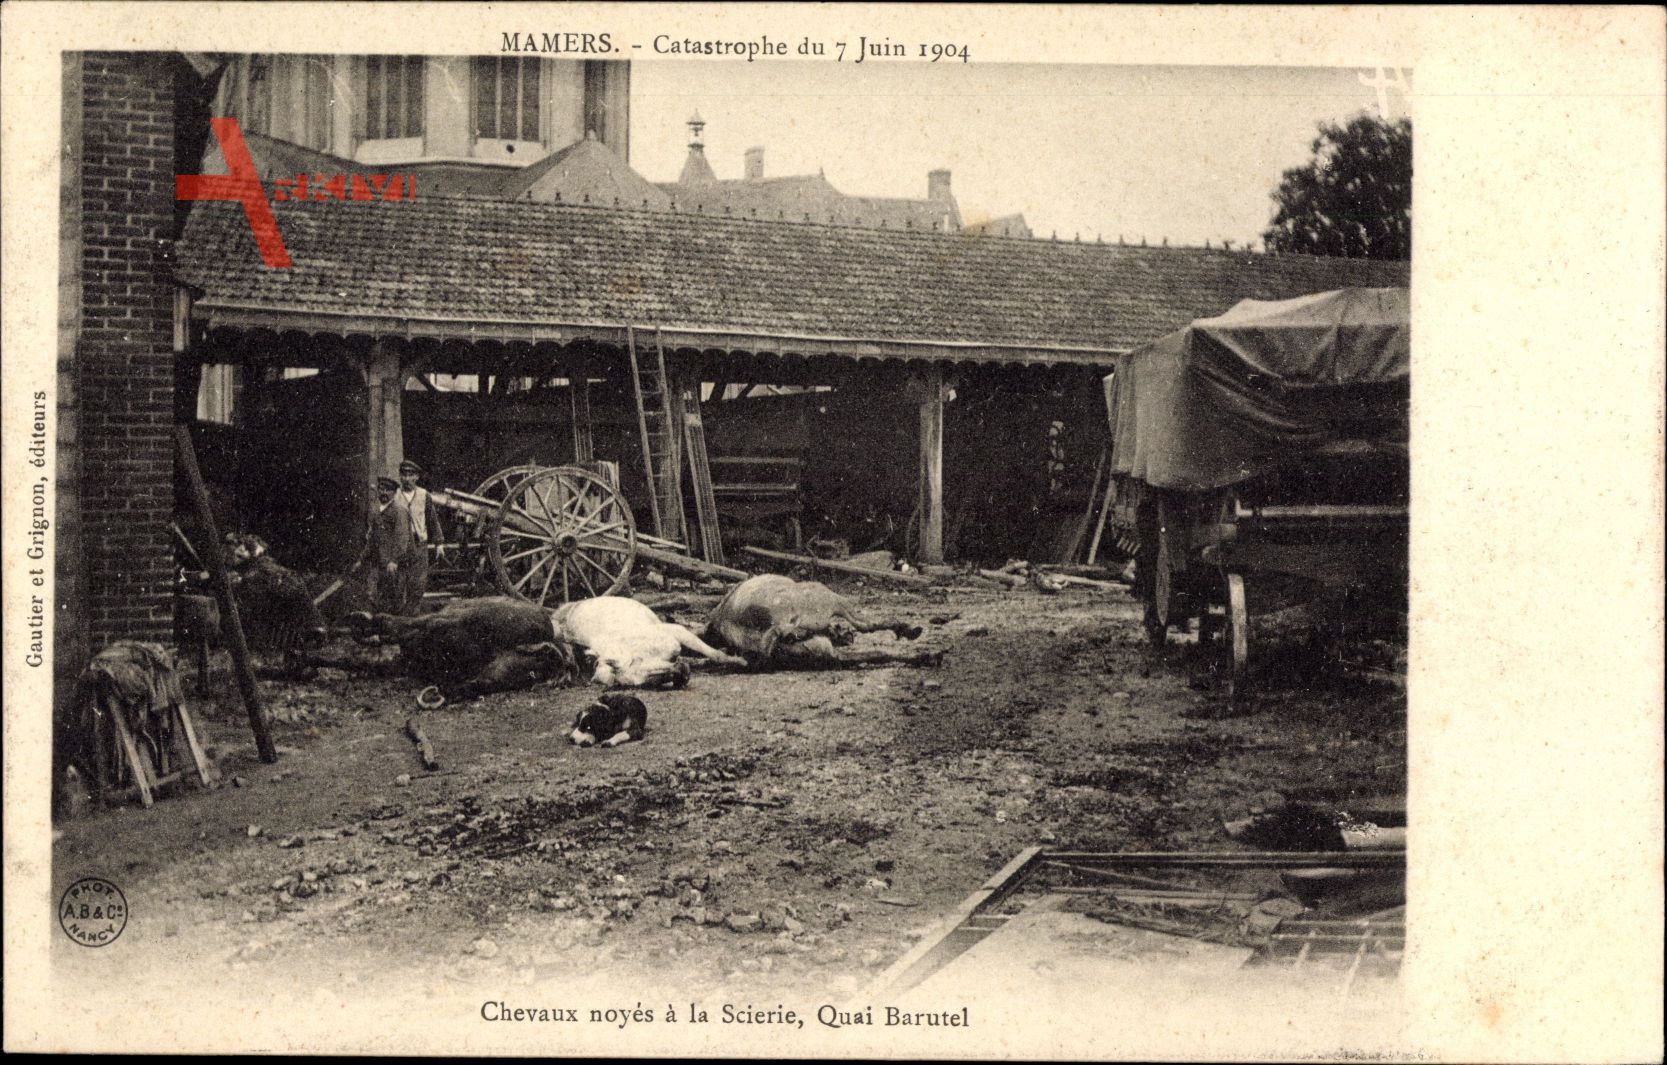 Mamers Sarthe, Catastrophe du 7 juin 1904, Chevaux noyes a la Scierie